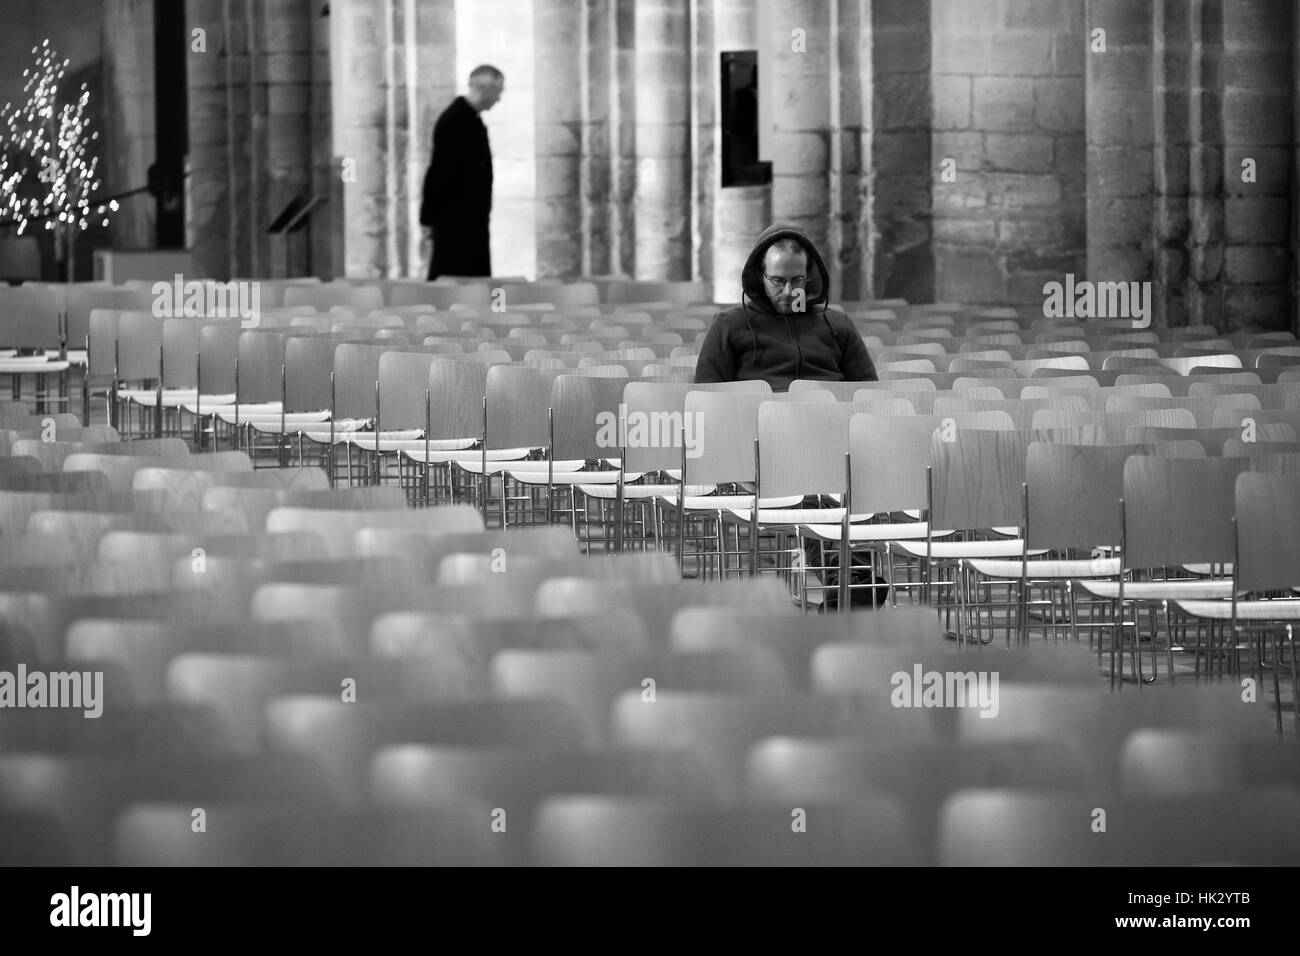 Un homme dans une contemplation profonde ou la prière dans la Cathédrale d'Ely avec un prêtre dans l'arrière-plan. Banque D'Images